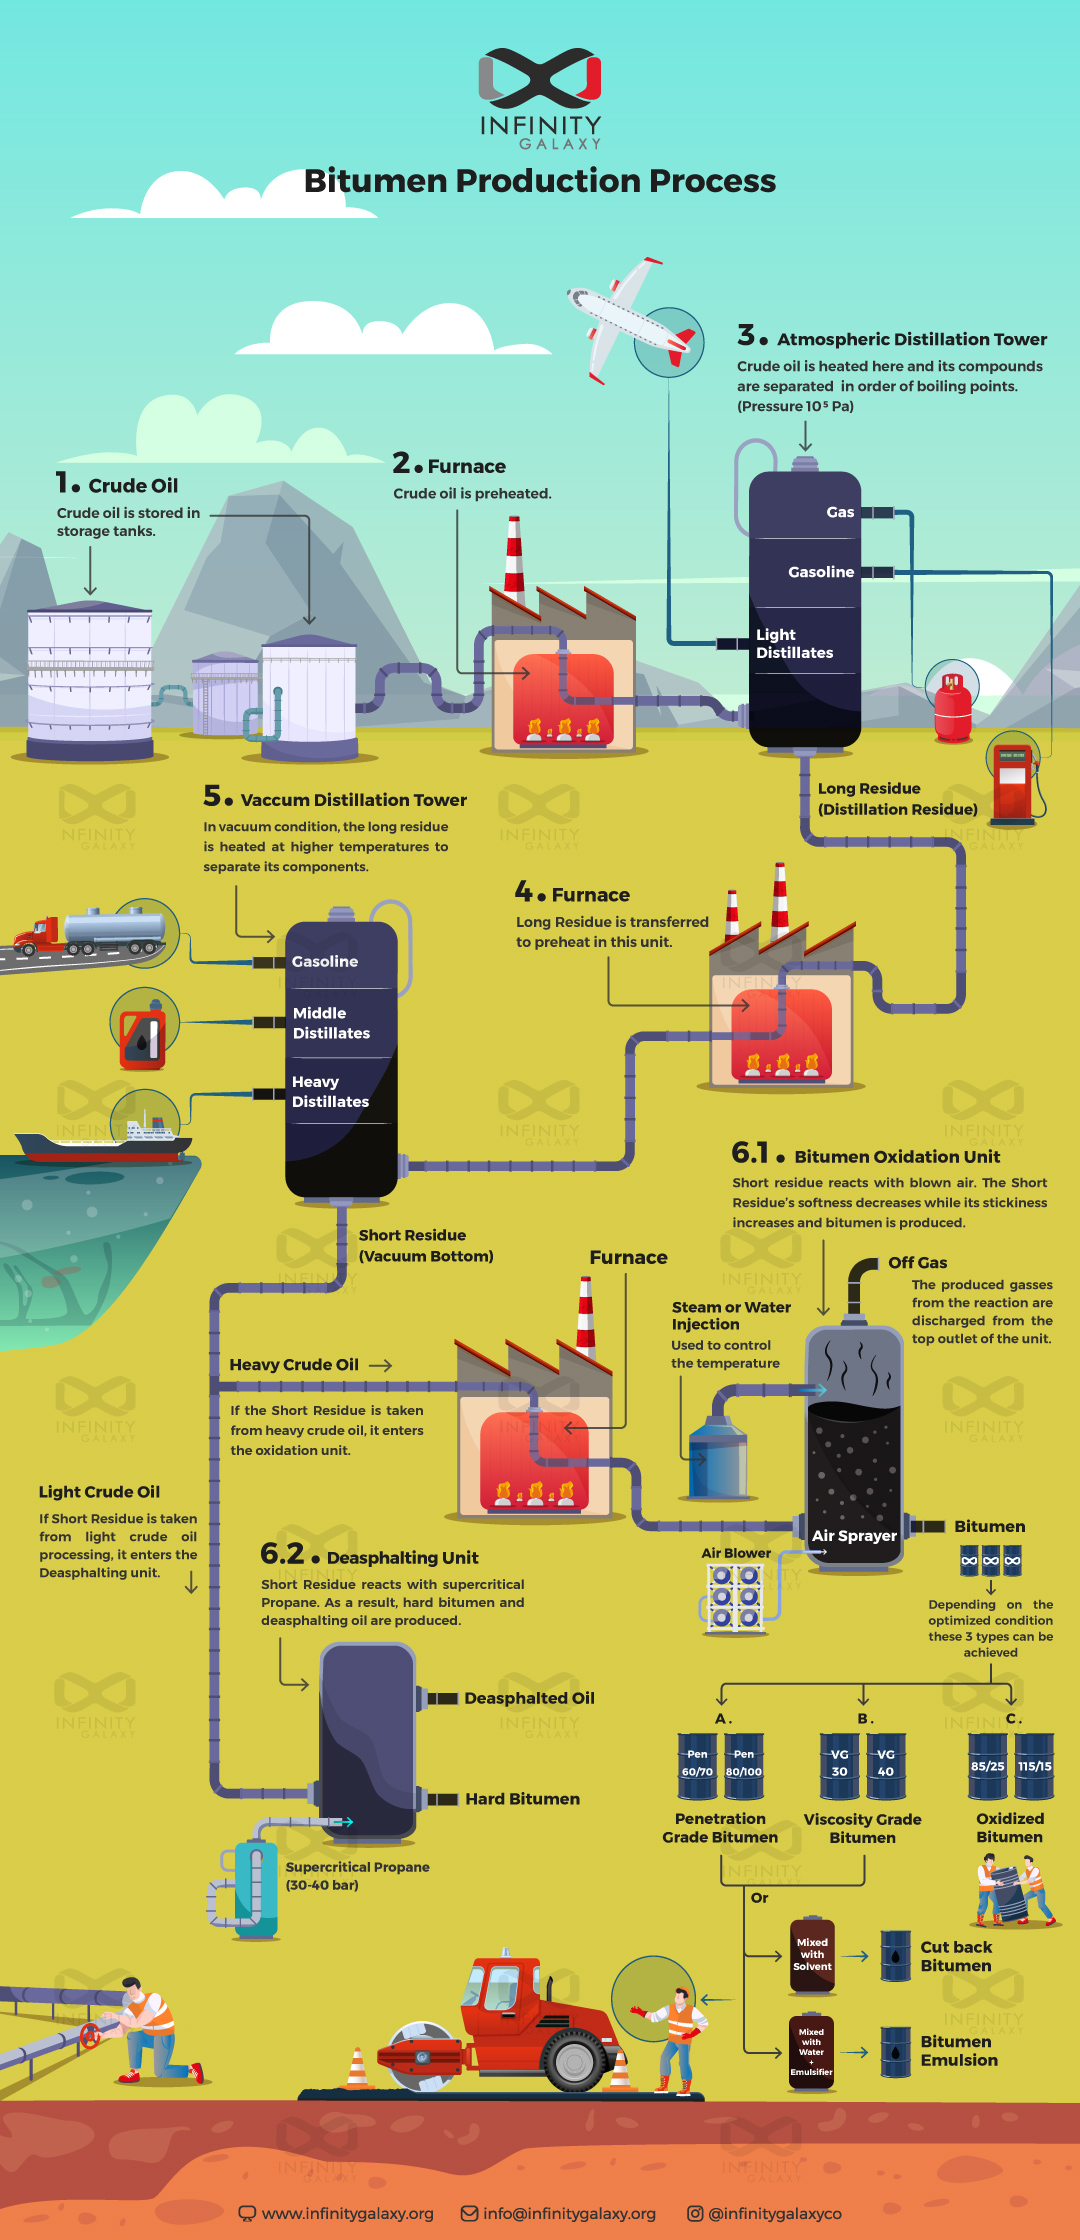 General Description of Bitumen Production Process